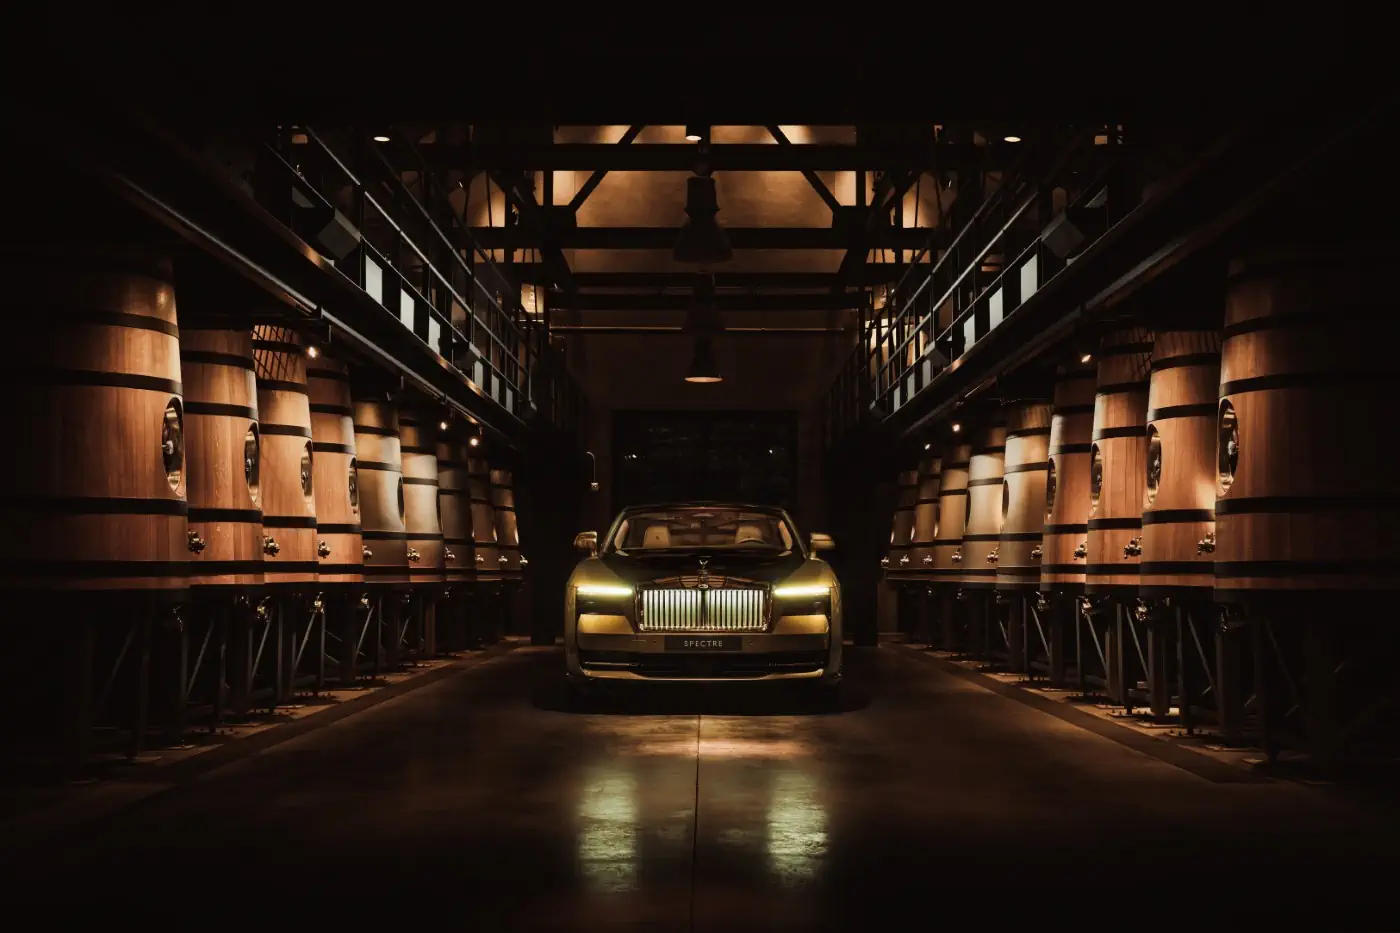 Rolls-Royce Spectre, La révolution électrique de l'automobile de luxe